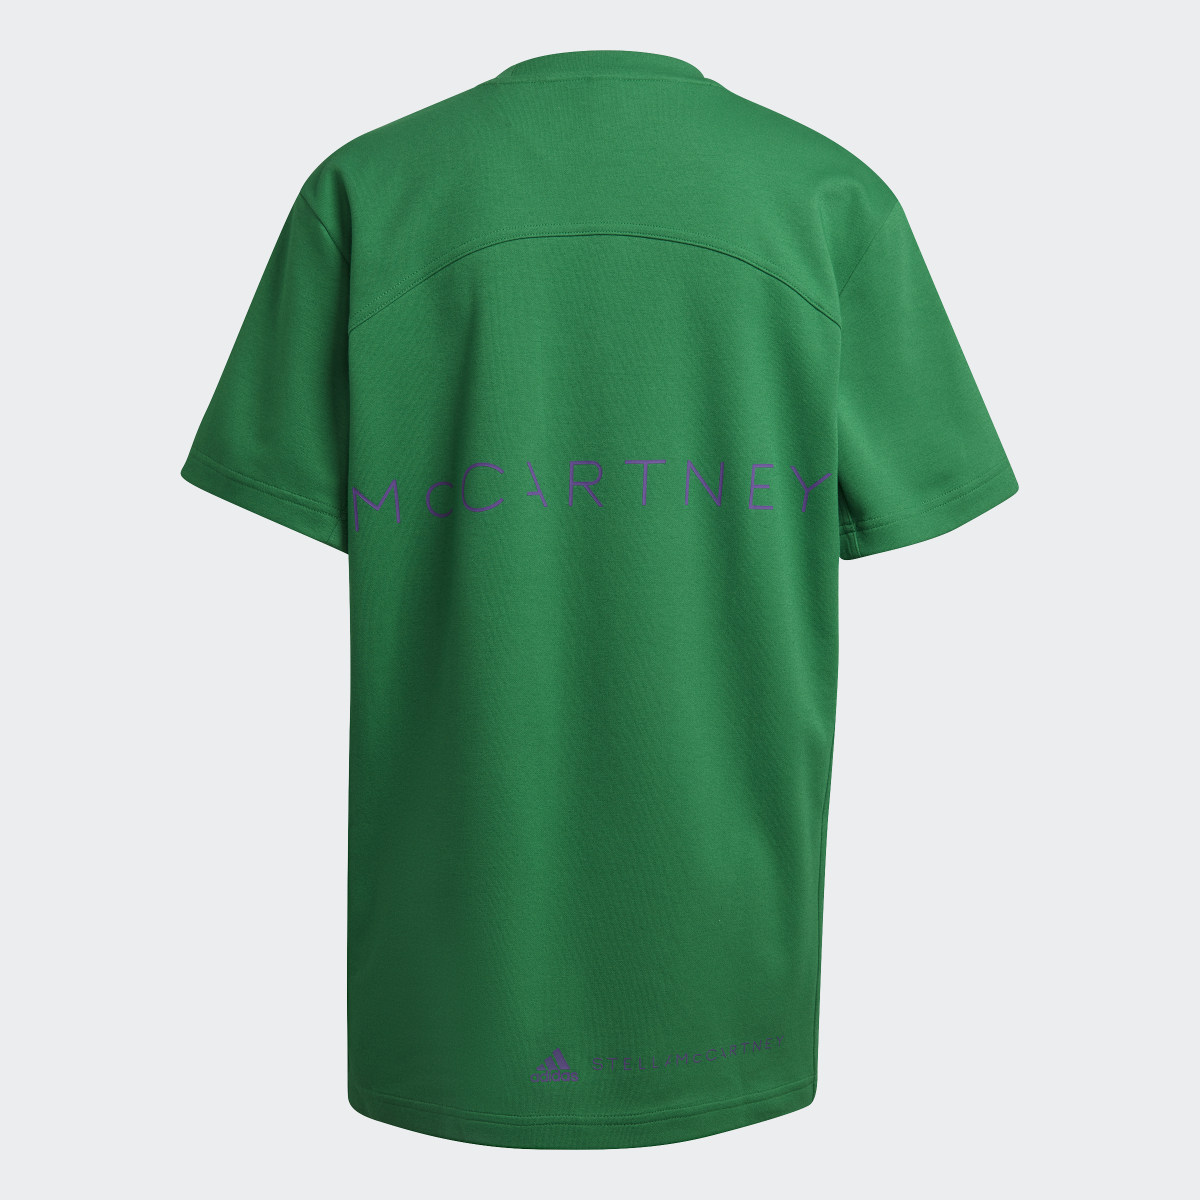 Adidas by Stella McCartney Logo T-Shirt. 6